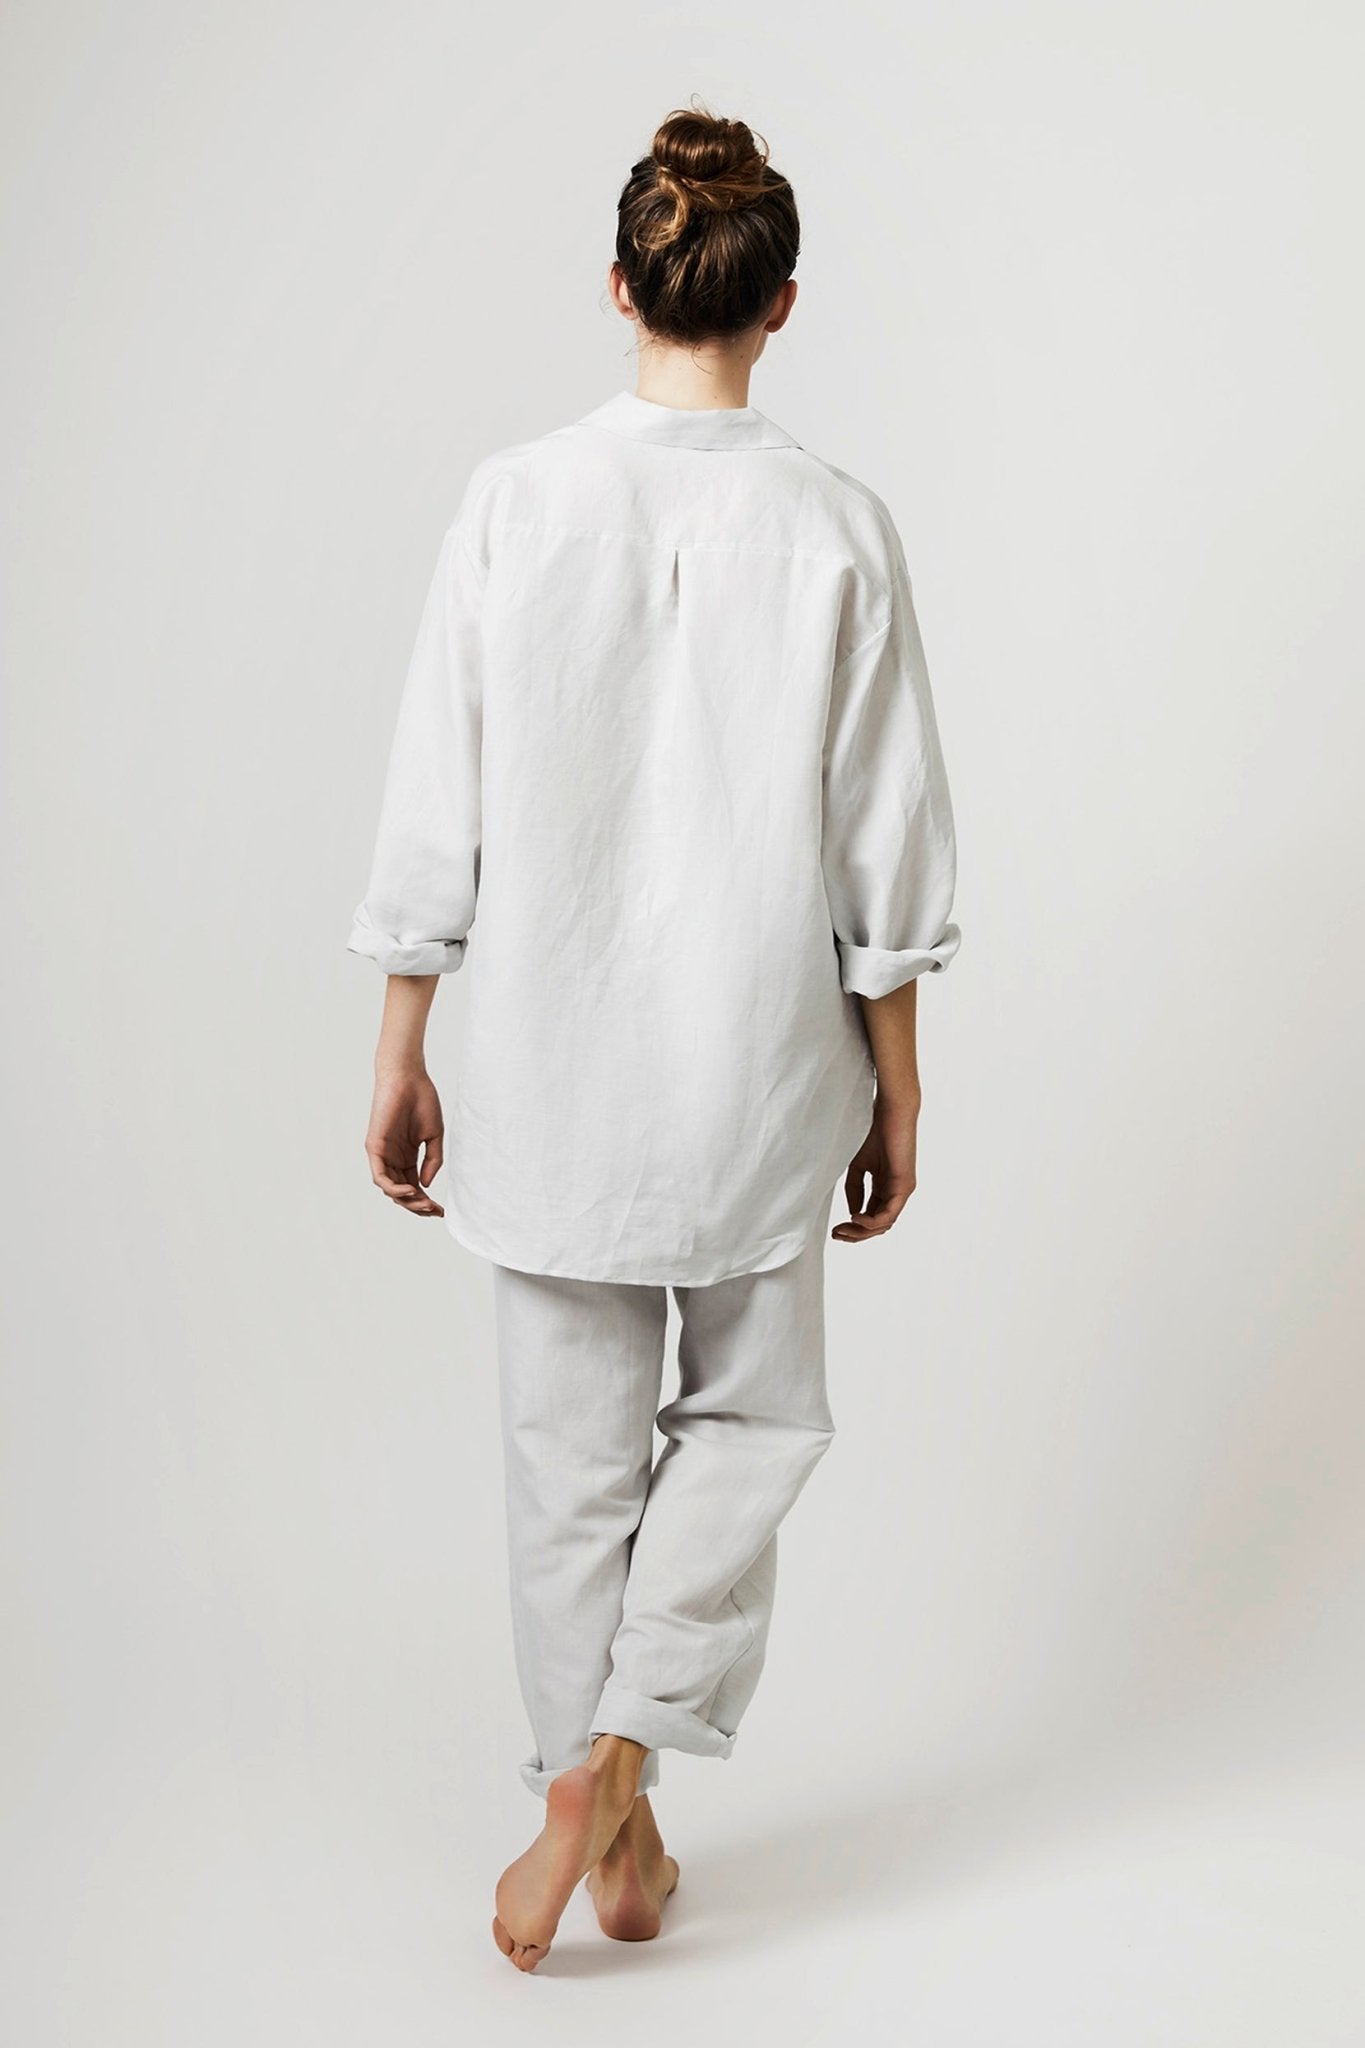 Halbleinen Homewear PJ Shirt in Kreide Model Bildausschnitt 3